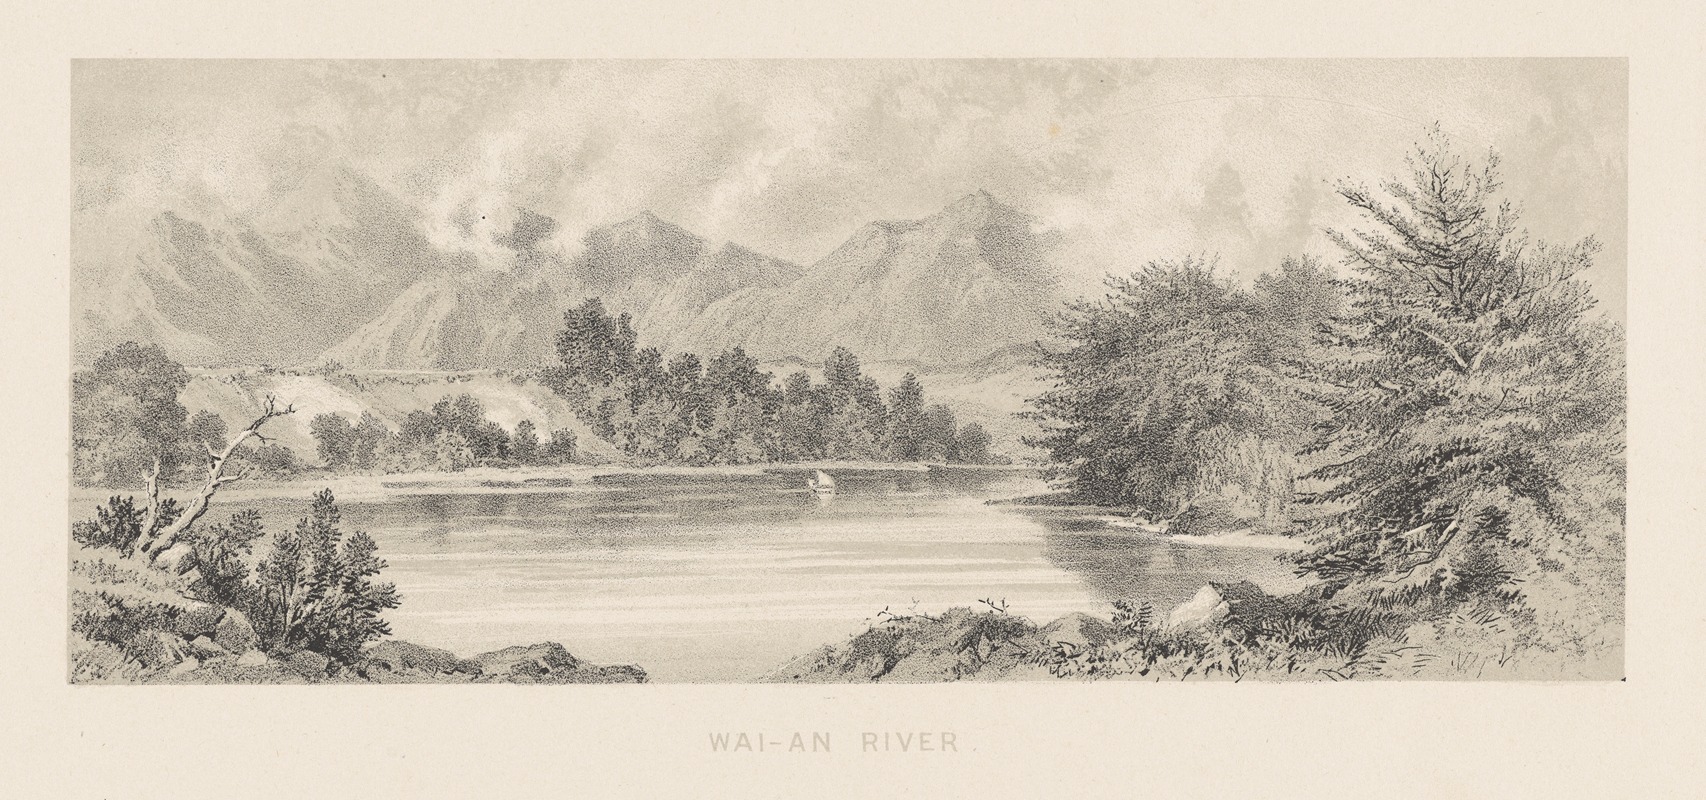 Charles Decimus Barraud - New Zealand Graphic and Descriptive. Plate V. Wai-au River